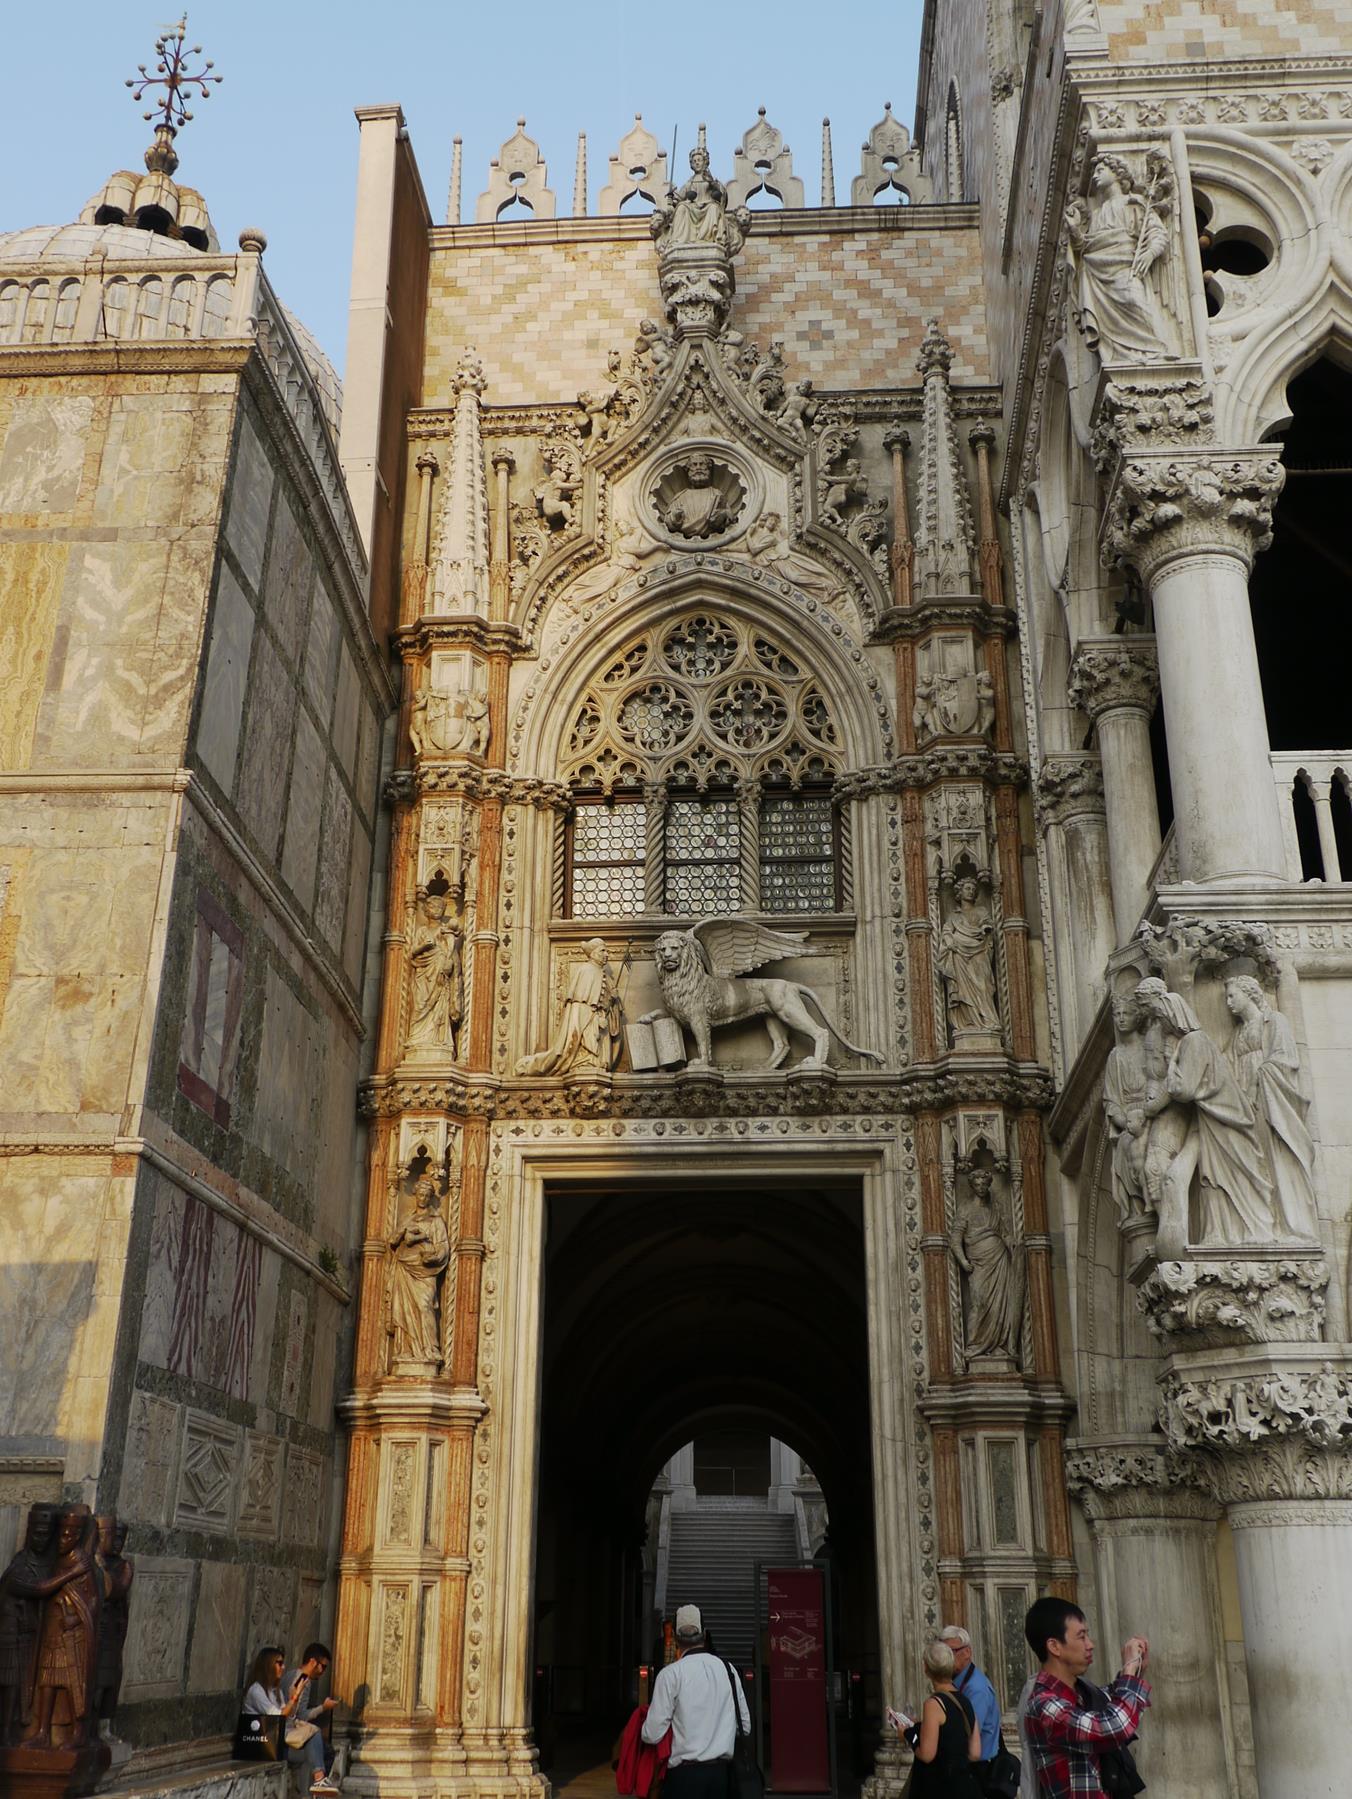 The Porta della Carta, entrance to the Doge's Palace, Venice.